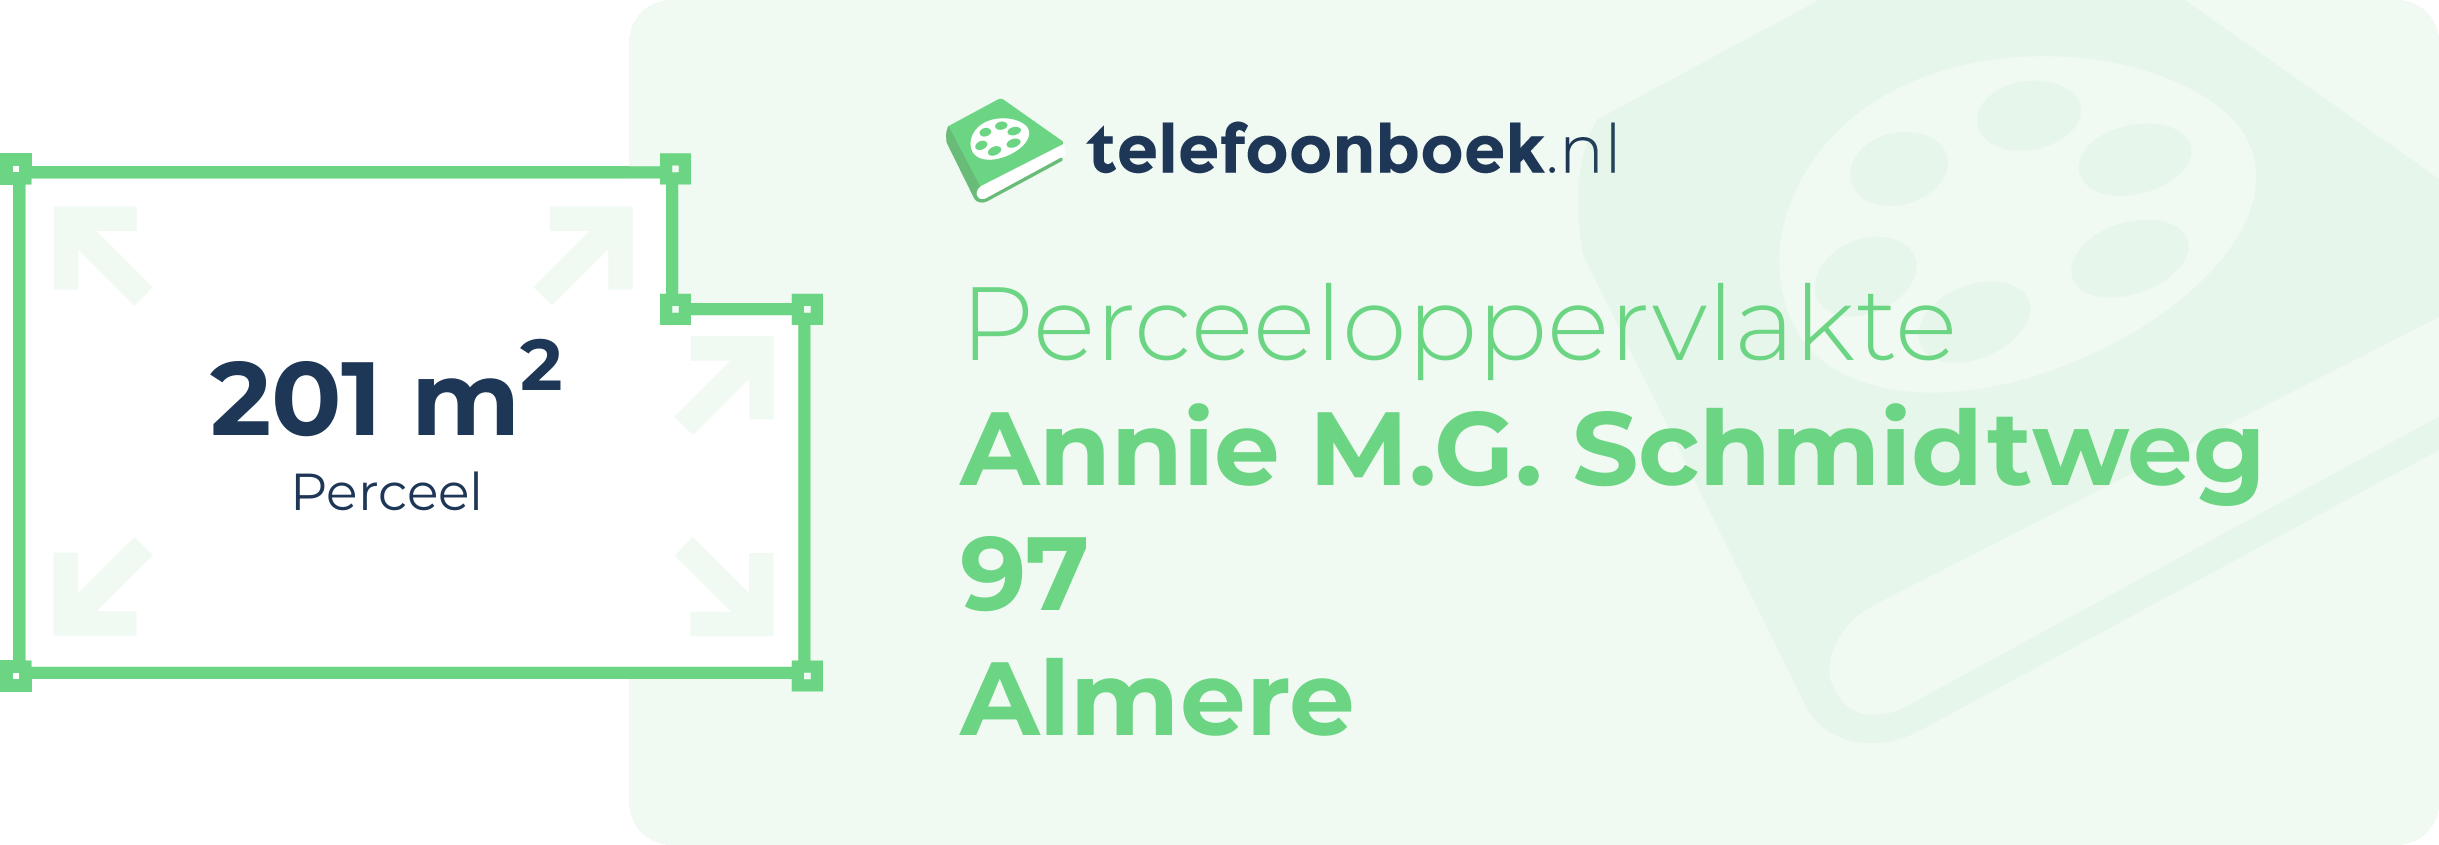 Perceeloppervlakte Annie M.G. Schmidtweg 97 Almere